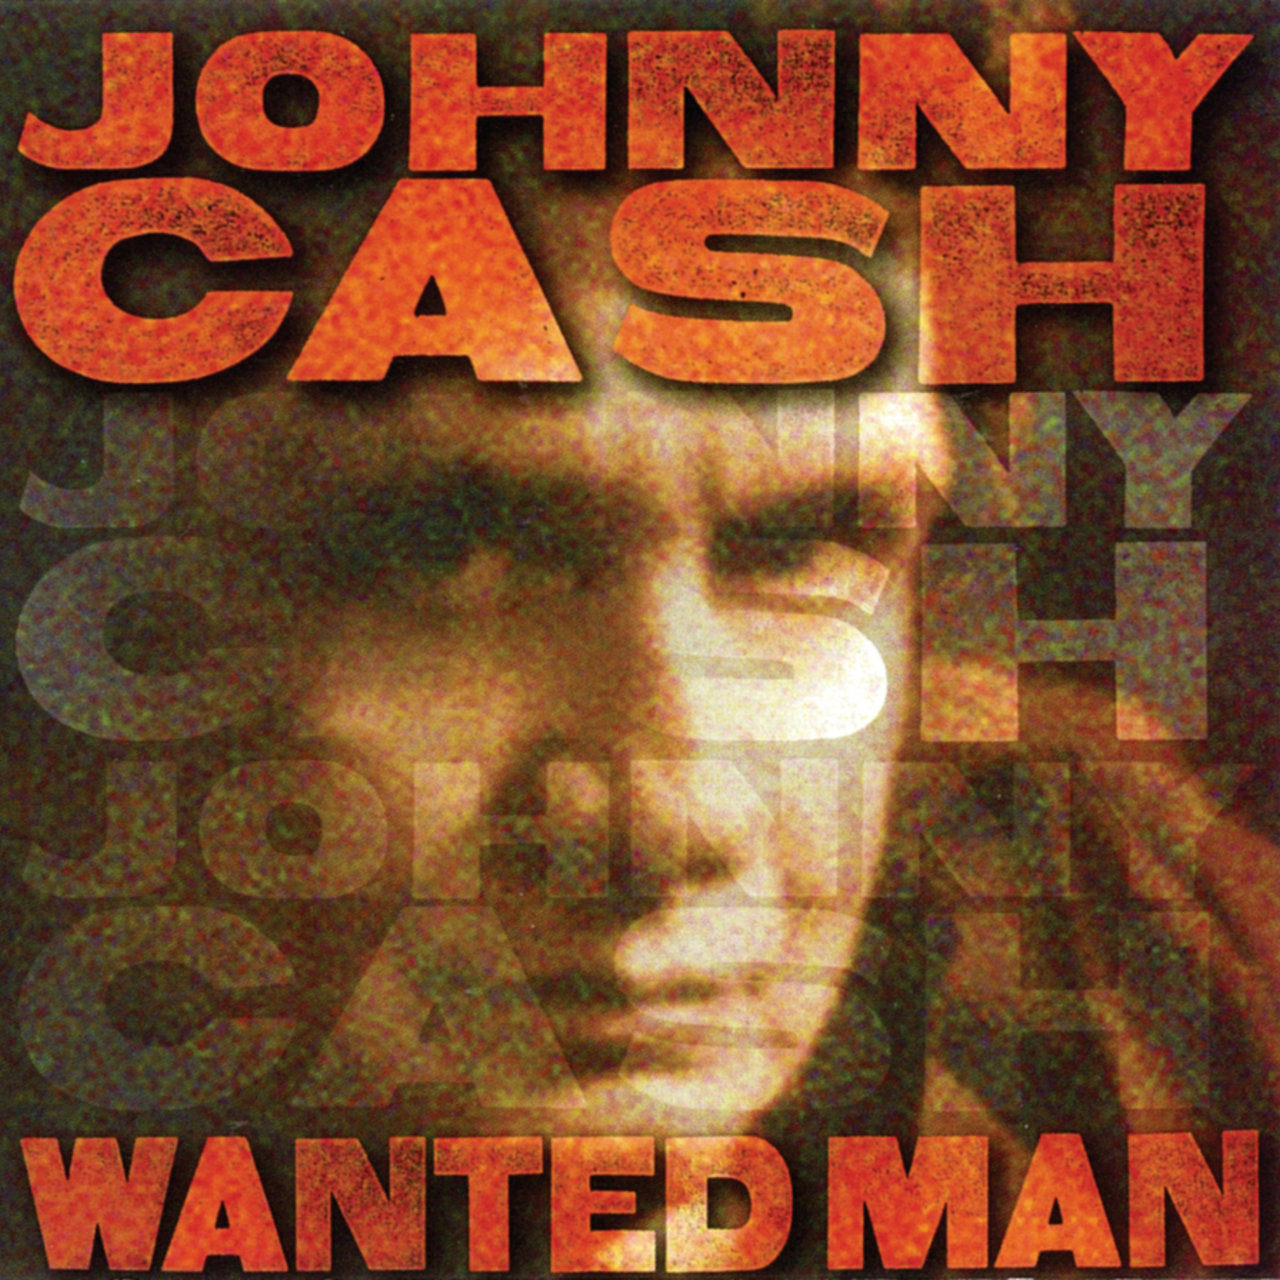 Wanted Man [2002]